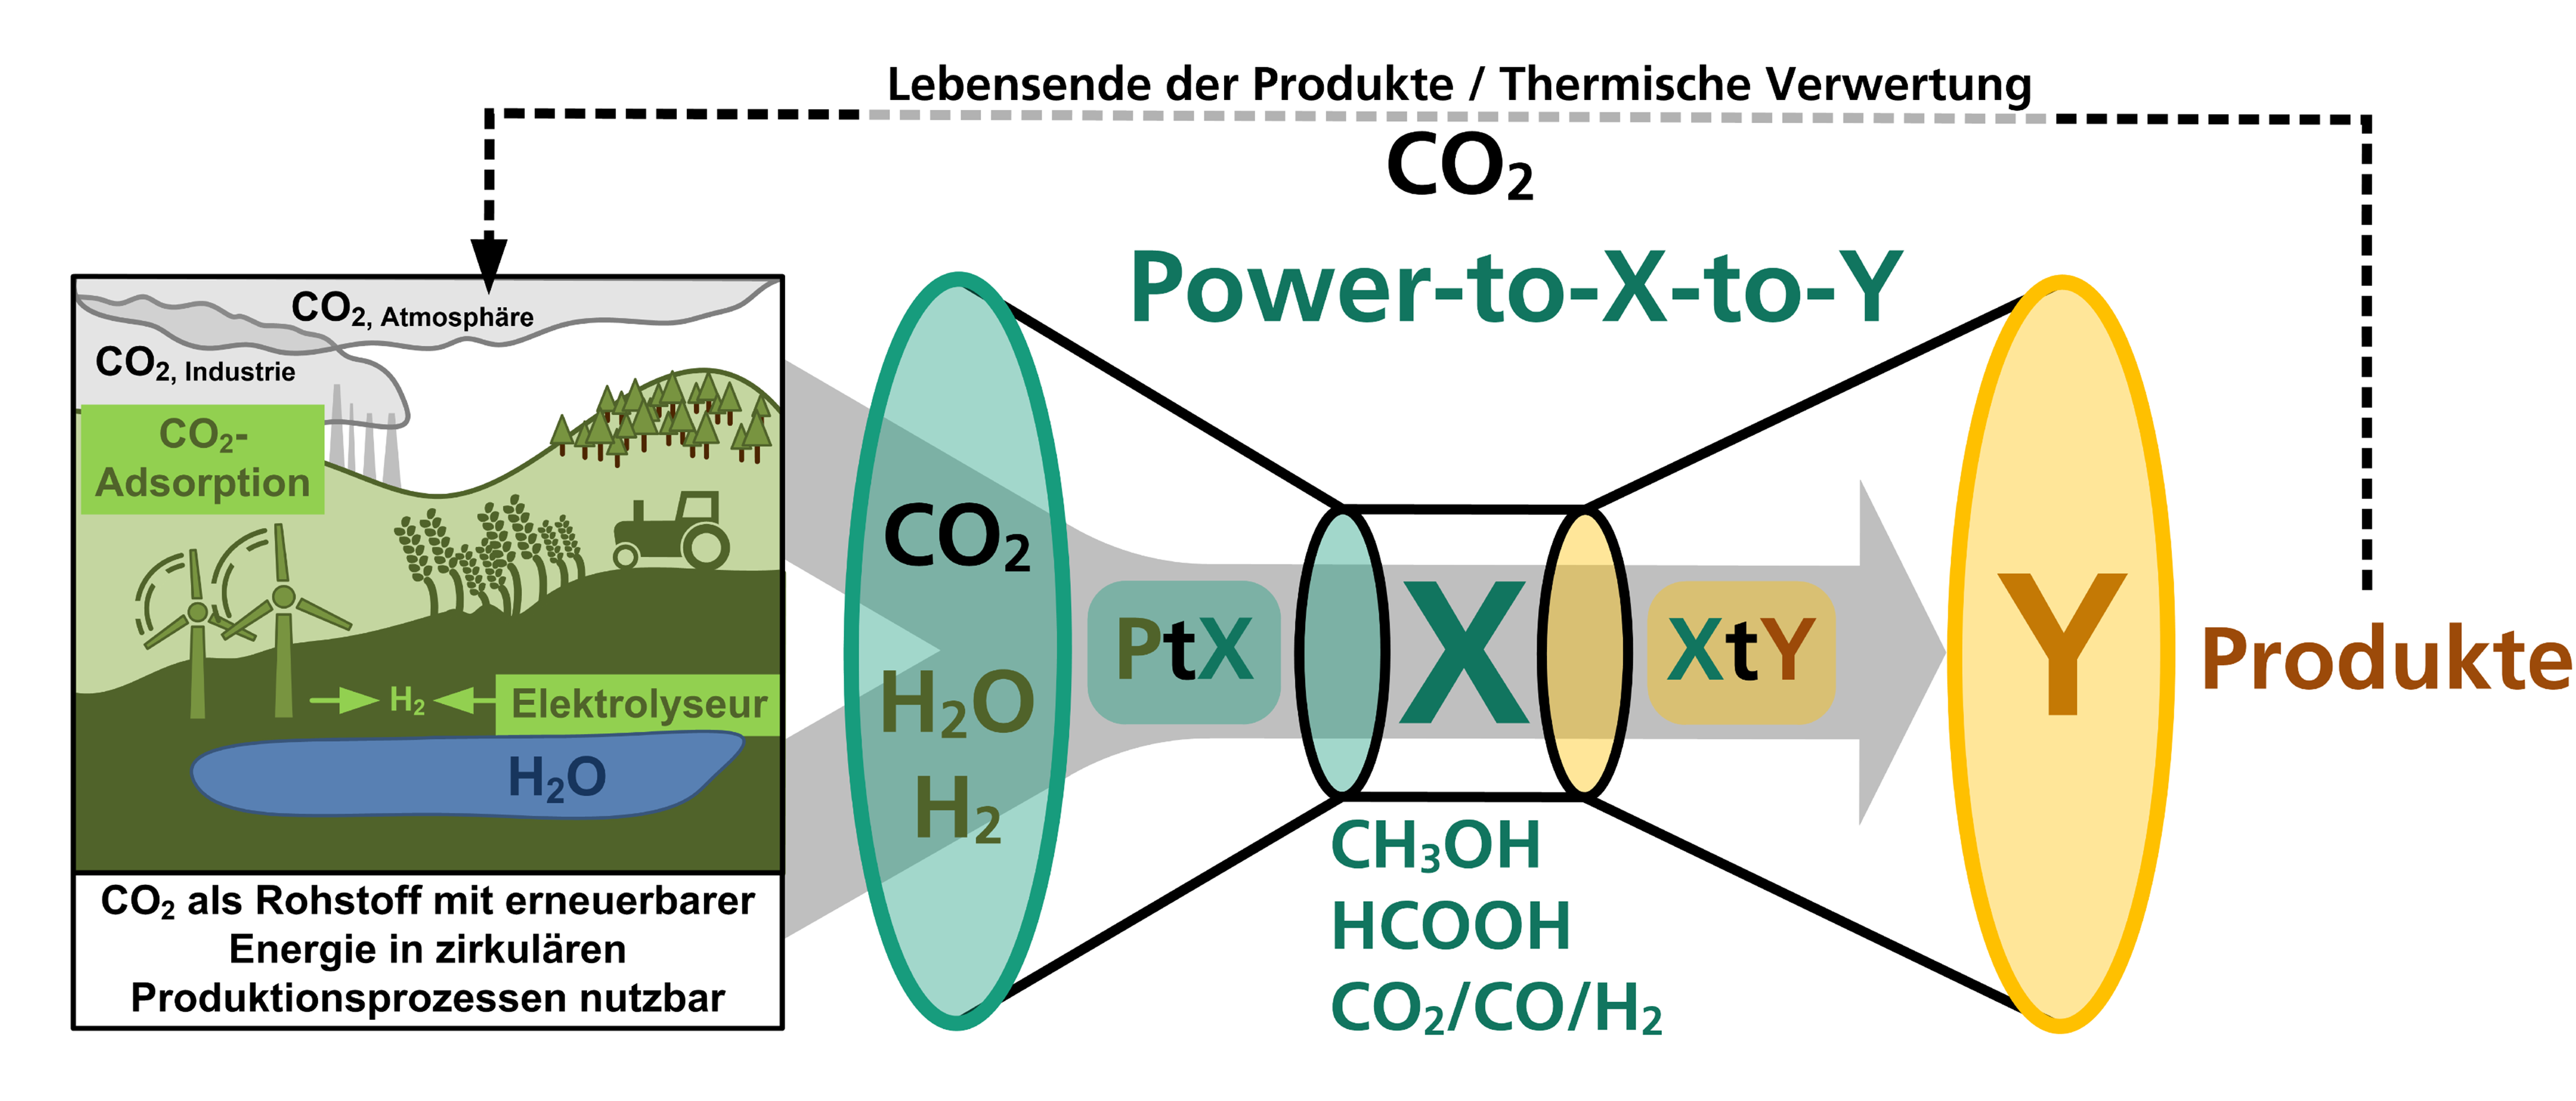 Die Erweiterung von Power-to-X zu einem Power-to-X-to-Y-Konzept verfolgt das Fraunhofer IGB. Hierbei wird im ersten Schritt (Power-to-X) das Treibhausgas CO<sub>2</sub> in energiereiche Zwischenprodukte wie Methanol (CH<sub>3</sub>OH) und Ameisensäure (HCOOH) umgesetzt. Über angekoppelte chemische oder biotechnologische Prozesse (X-to-Y), in denen die Zwischenprodukte als Ausgangsstoffe dienen, ist ein sehr breites Spektrum an Produkten mit hoher Wertschöpfung zu erreichen. Somit wird CO<sub>2</sub> zu einem wertvollen primären Rohstoff. 